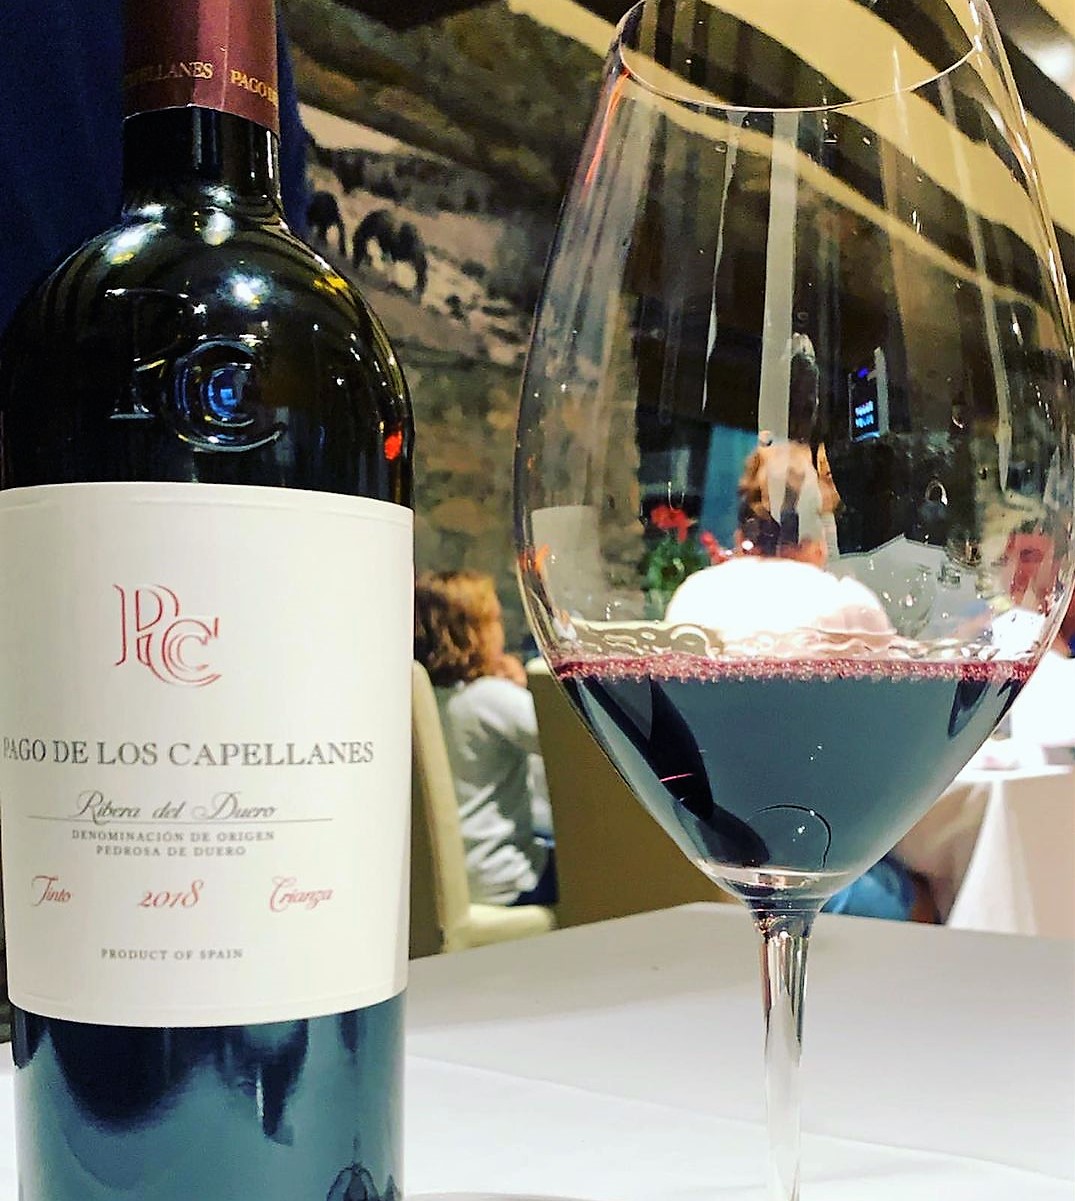 Pago de los Capellanes Crianza 2018 Ribera del Duero es un vino tinto maduro con aromas de fruta roja en compota, notas balsámicas y toques tostados